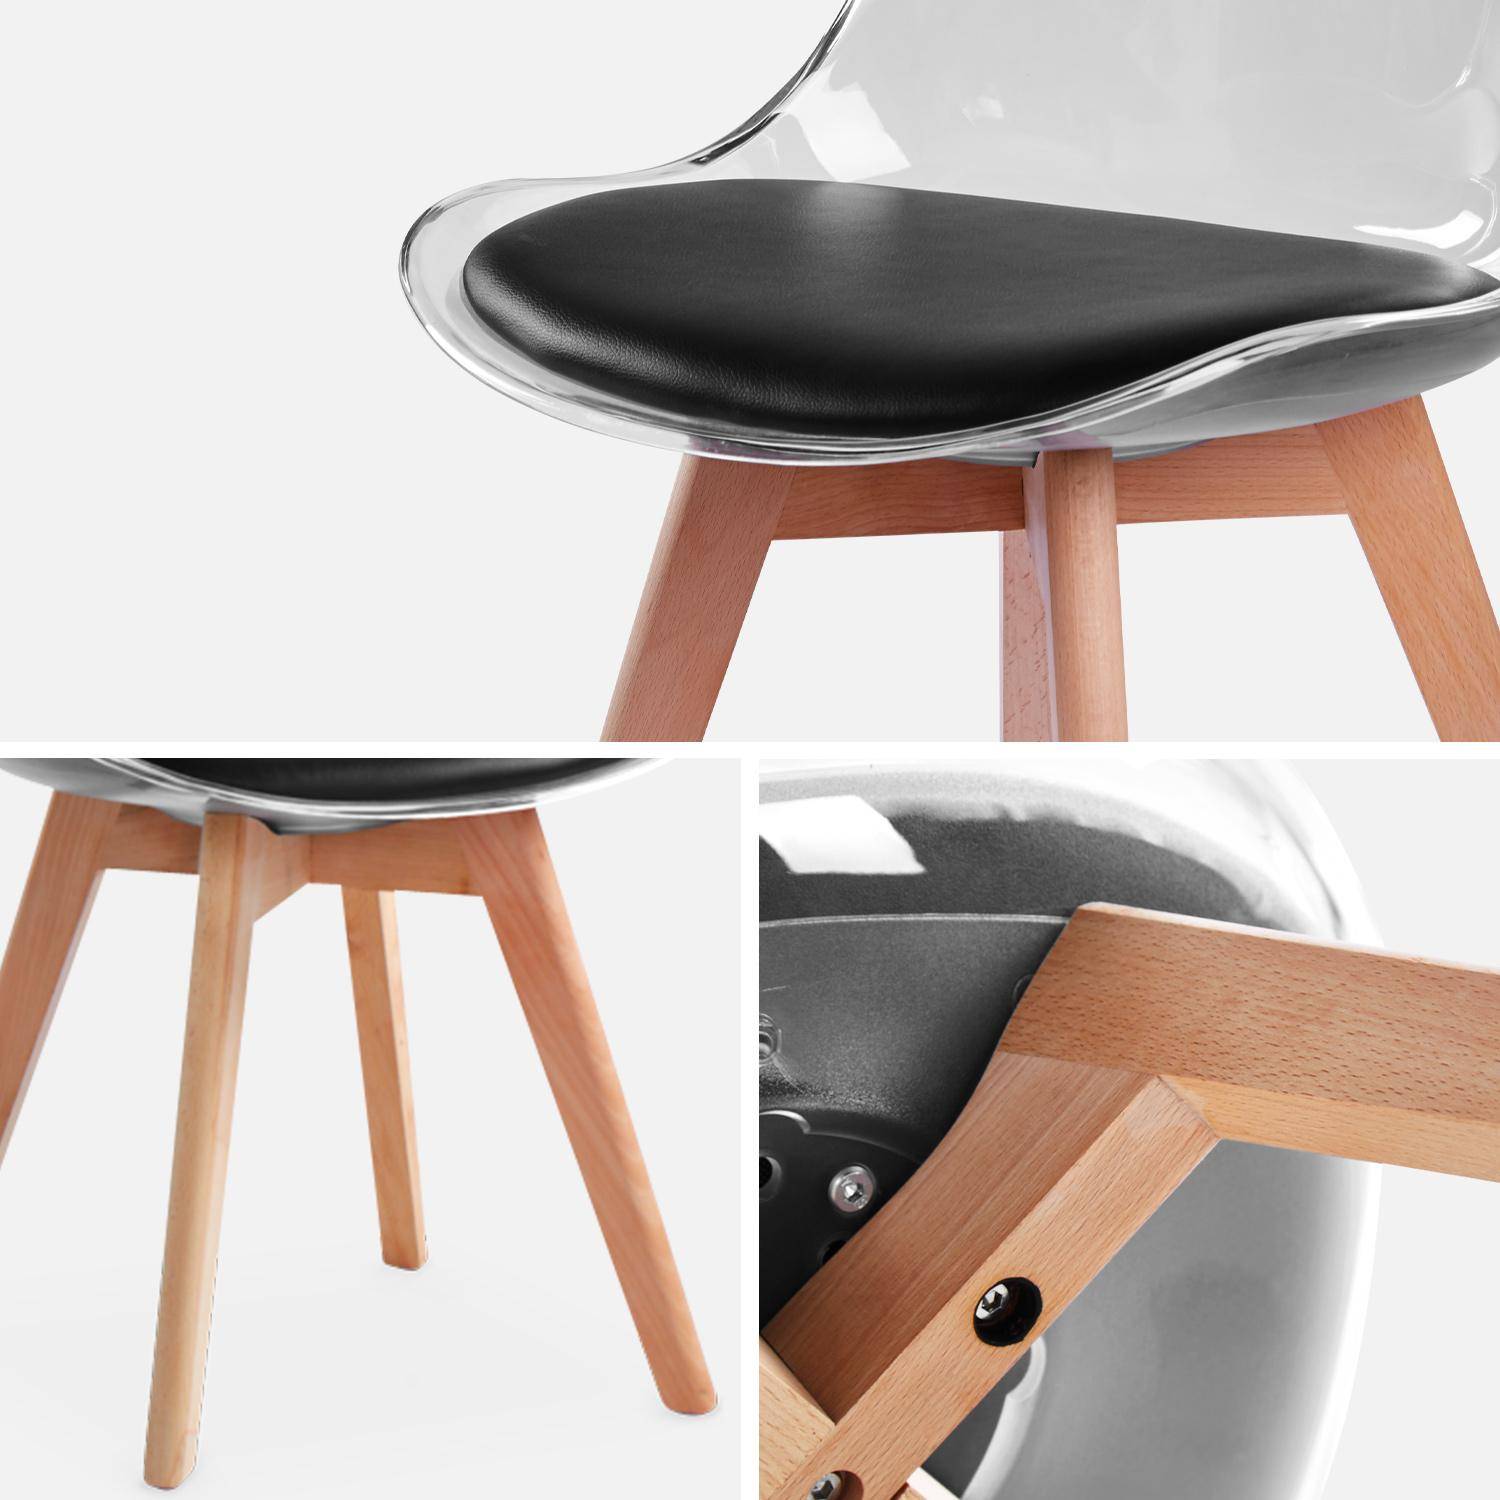 Juego de 4 sillas escandinavas - Lagertha - patas de madera, asientos individuales, cojín negro, carcasa transparente  Photo7